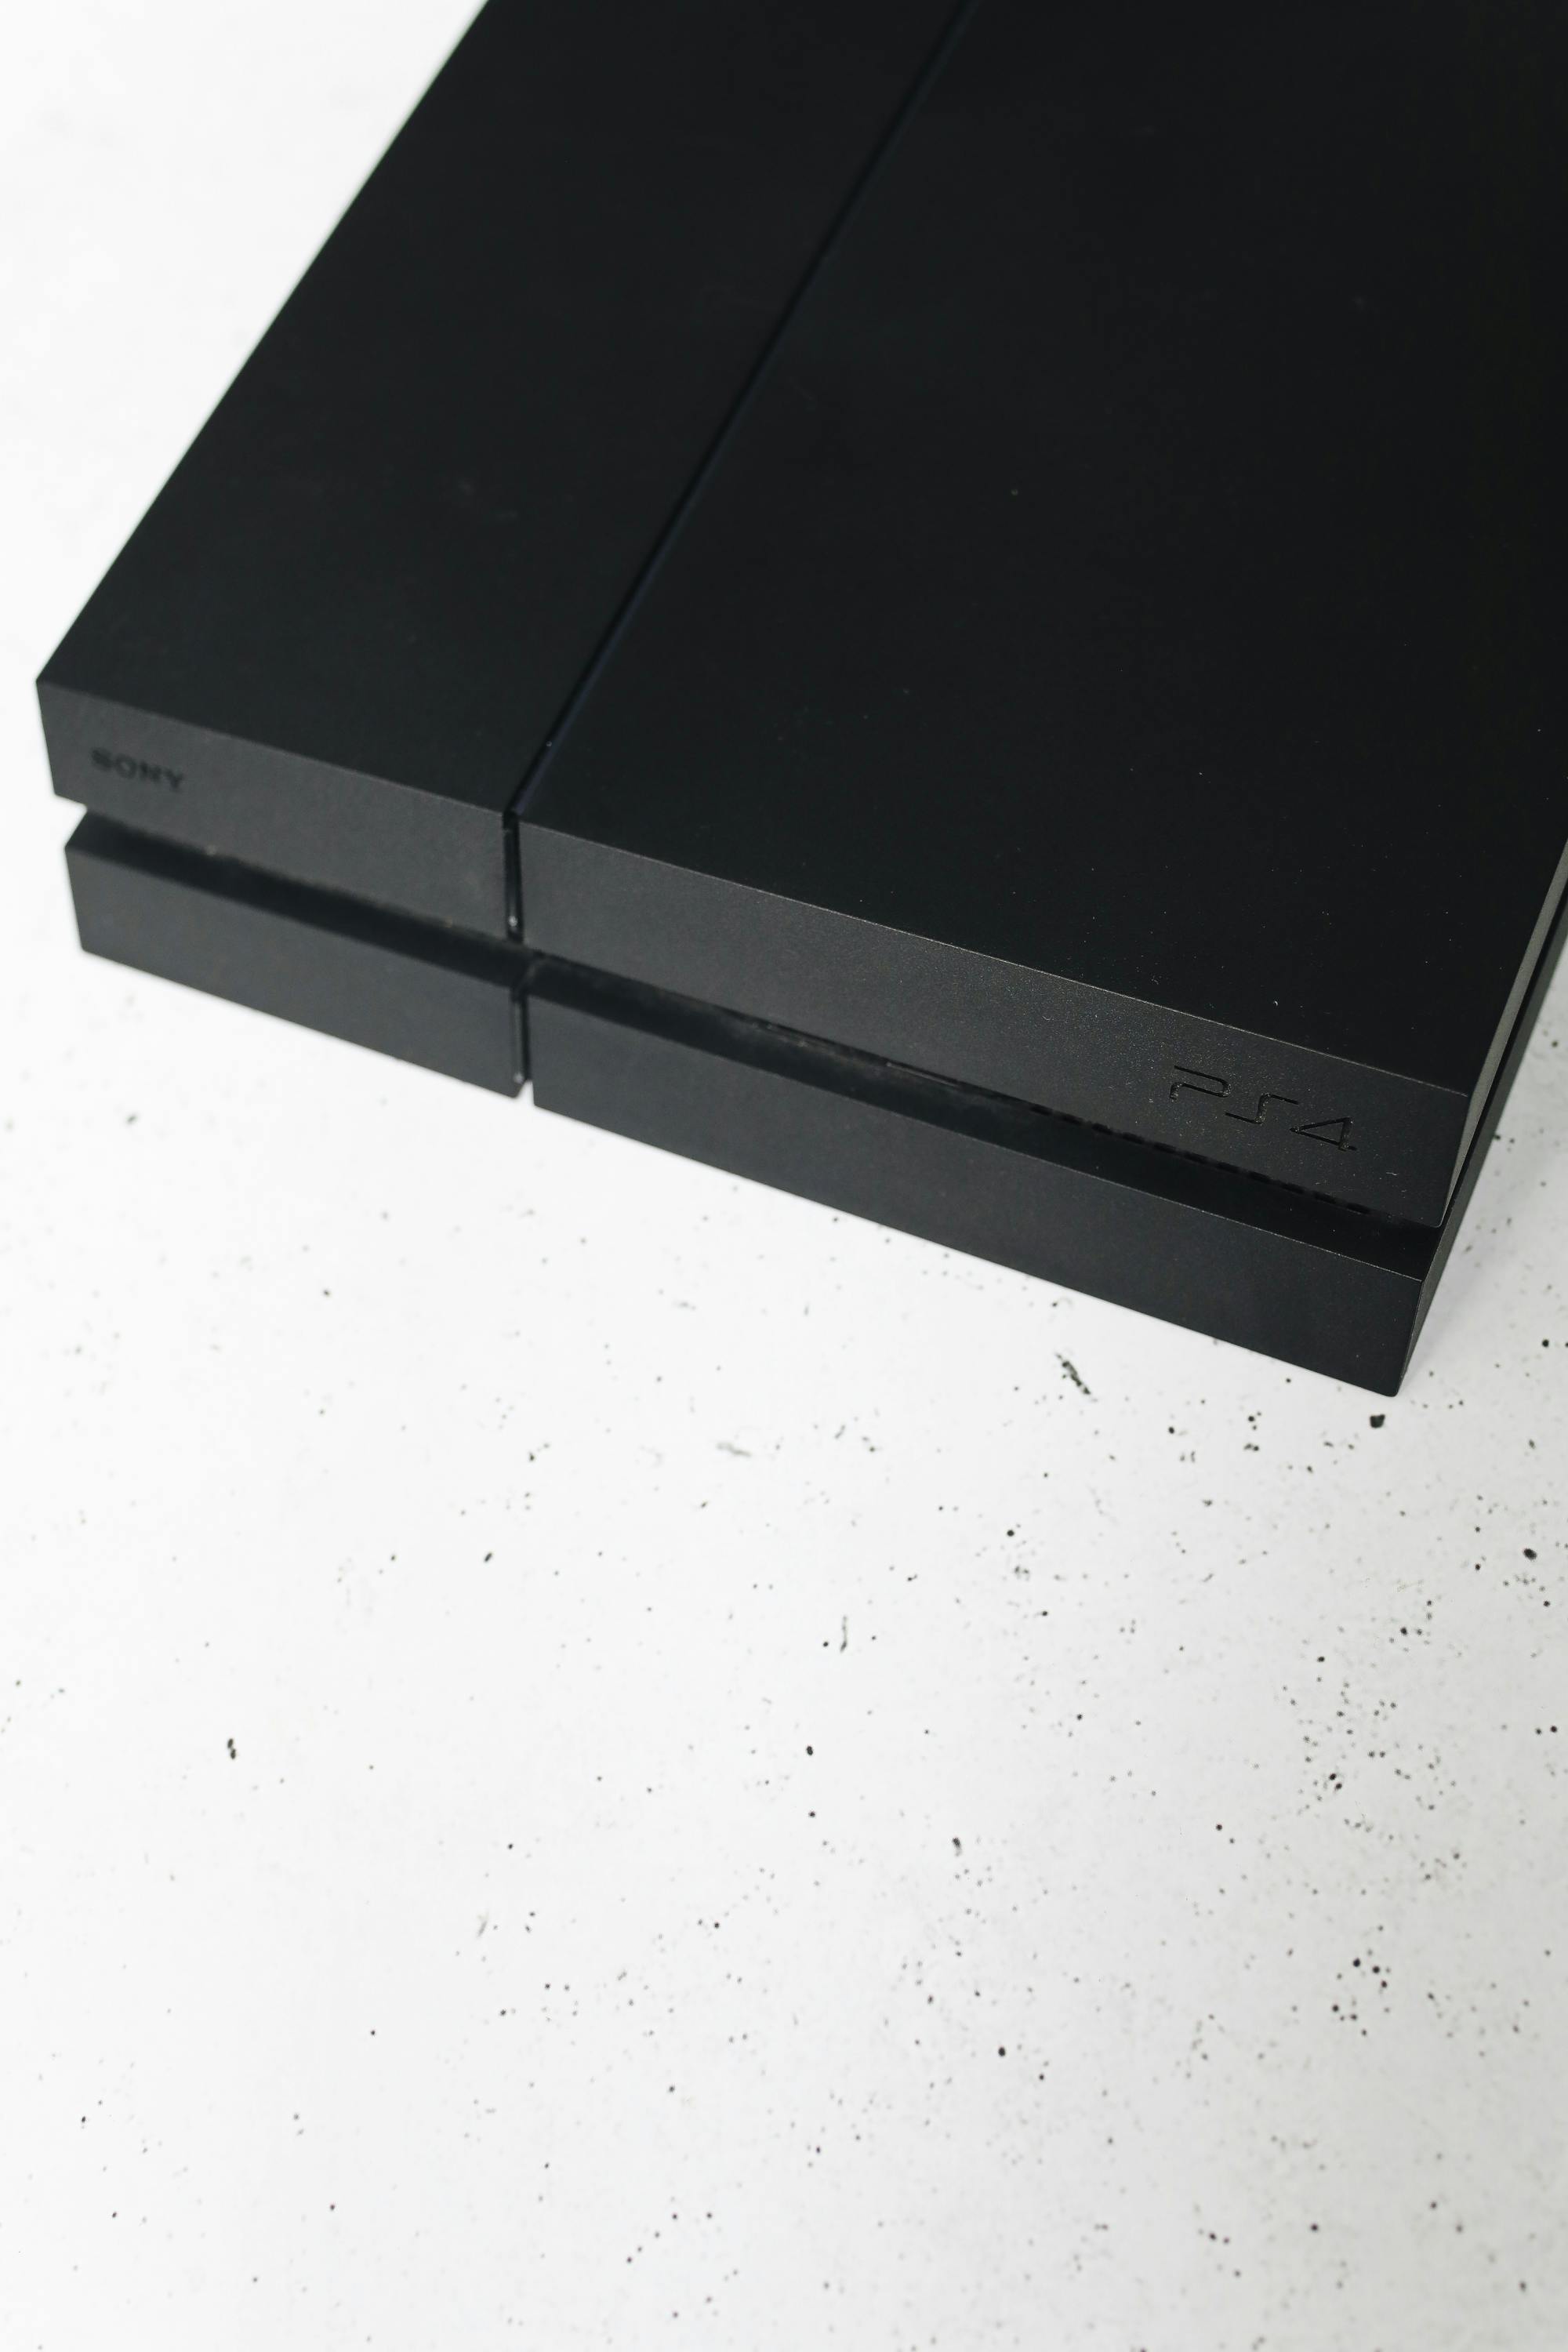 Eine PlayStation 4 Konsole | Quelle: Pexels